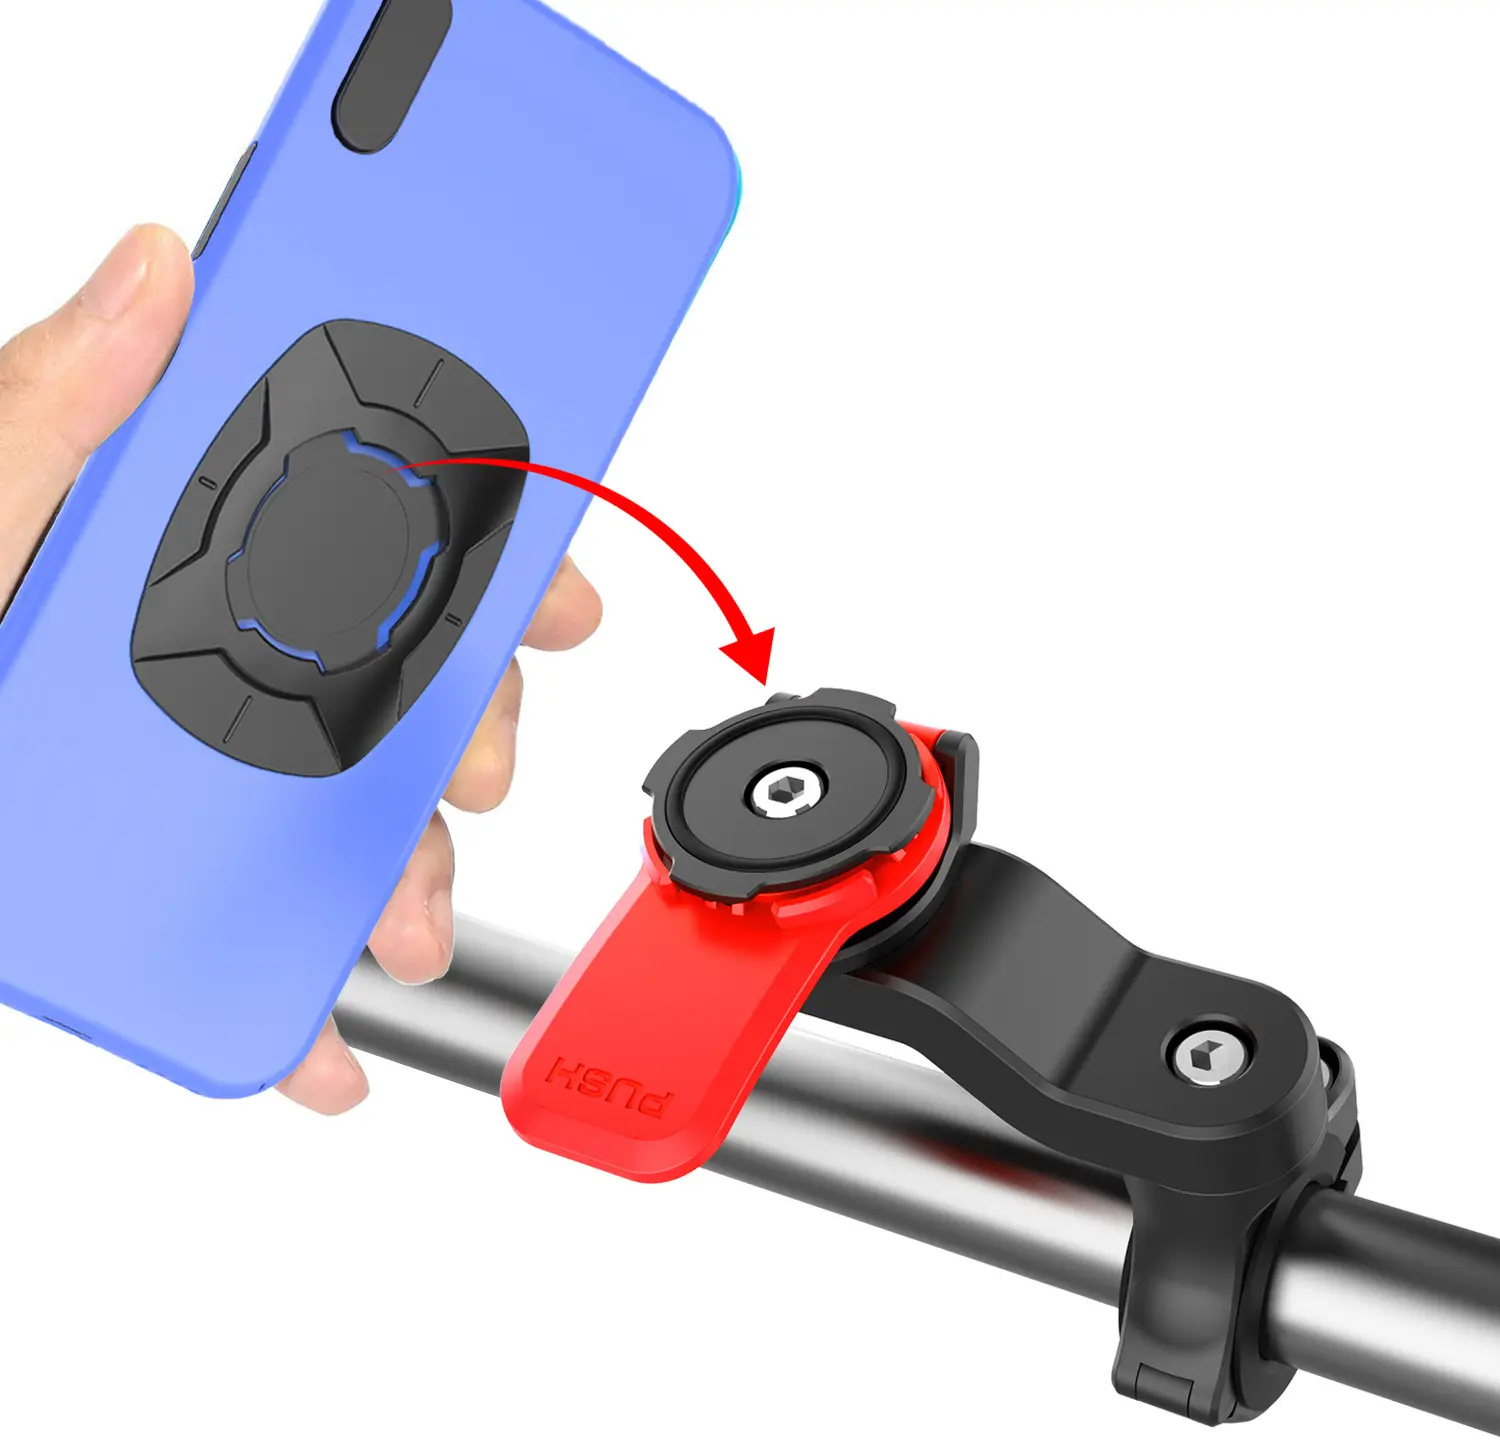 Evrensel 4 - 7.2 inç Abs manyetik telefon kılıfı 360 rotasyon hızlı köşe büküm kilit motosiklet bisiklet telefon askısı tutucu